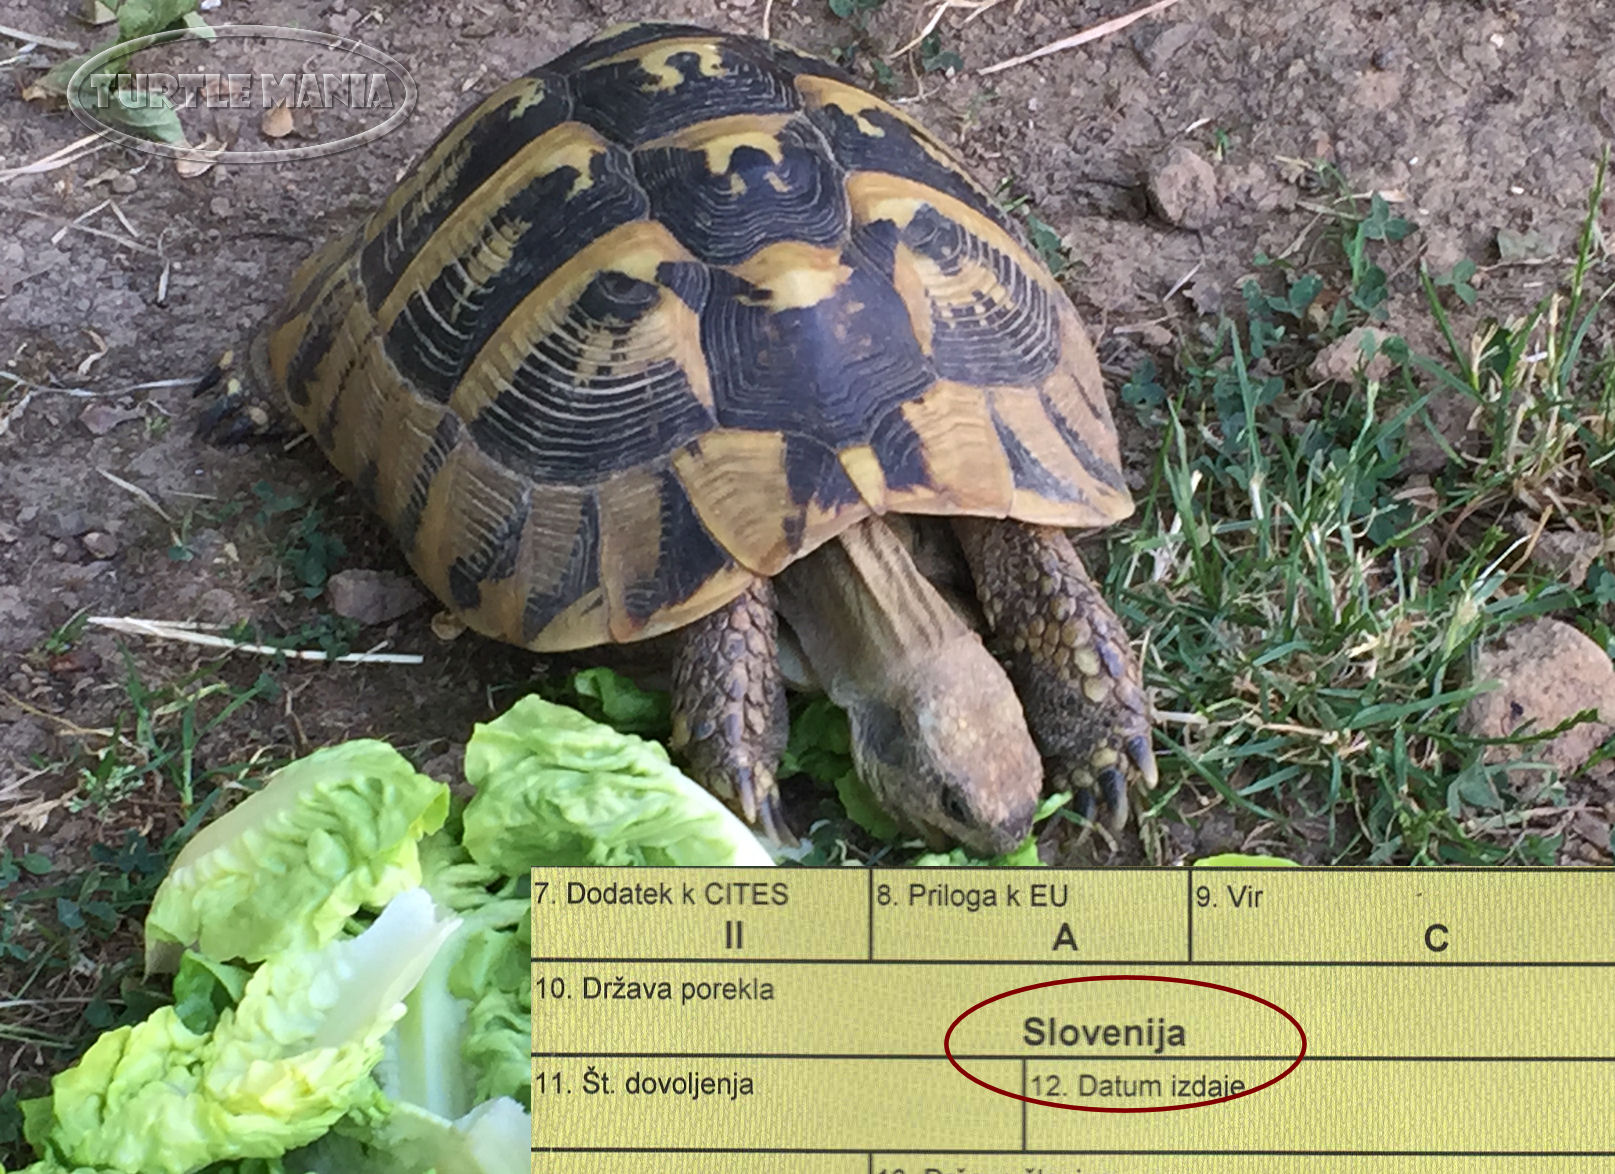 L'hibernation de la tortue d'Hermann ? conseils et recommandations